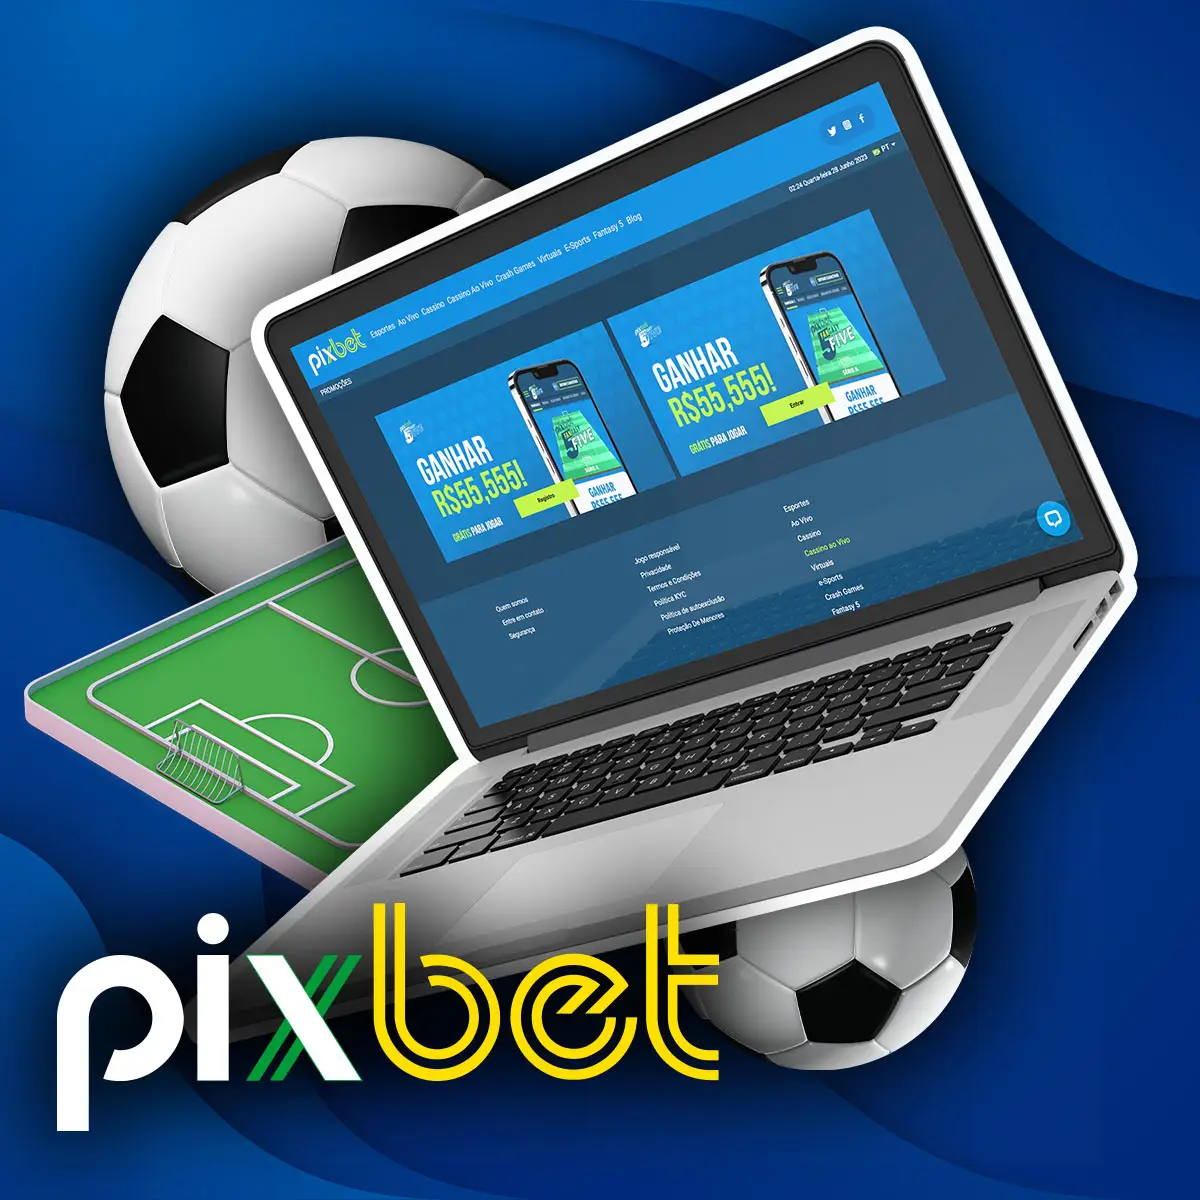 Fantasy Sport de apostas esportivas da casa de apostas Pixbet no mercado brasileiro